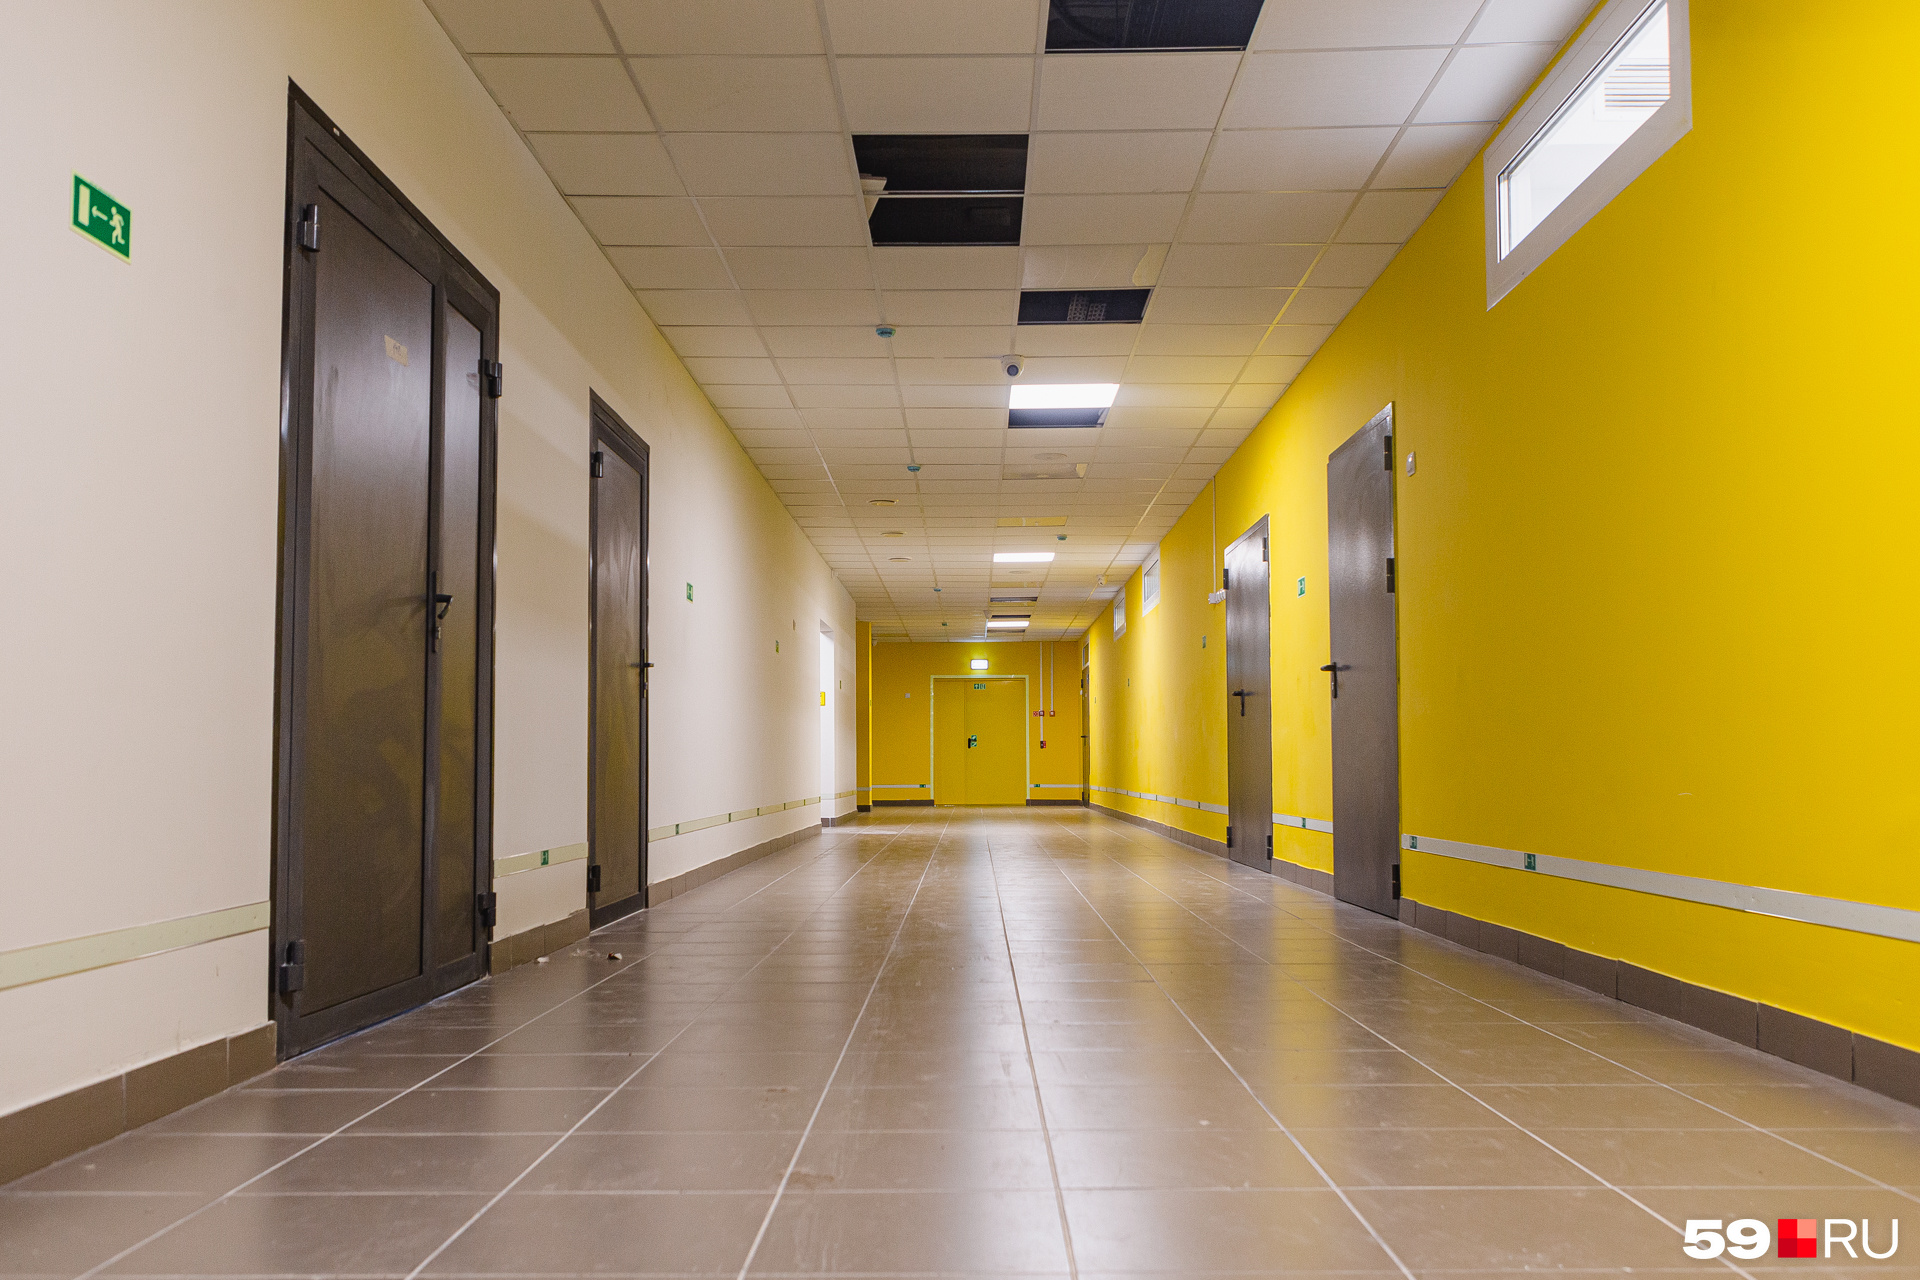 Стены в коридорах выкрашены в яркие цвета